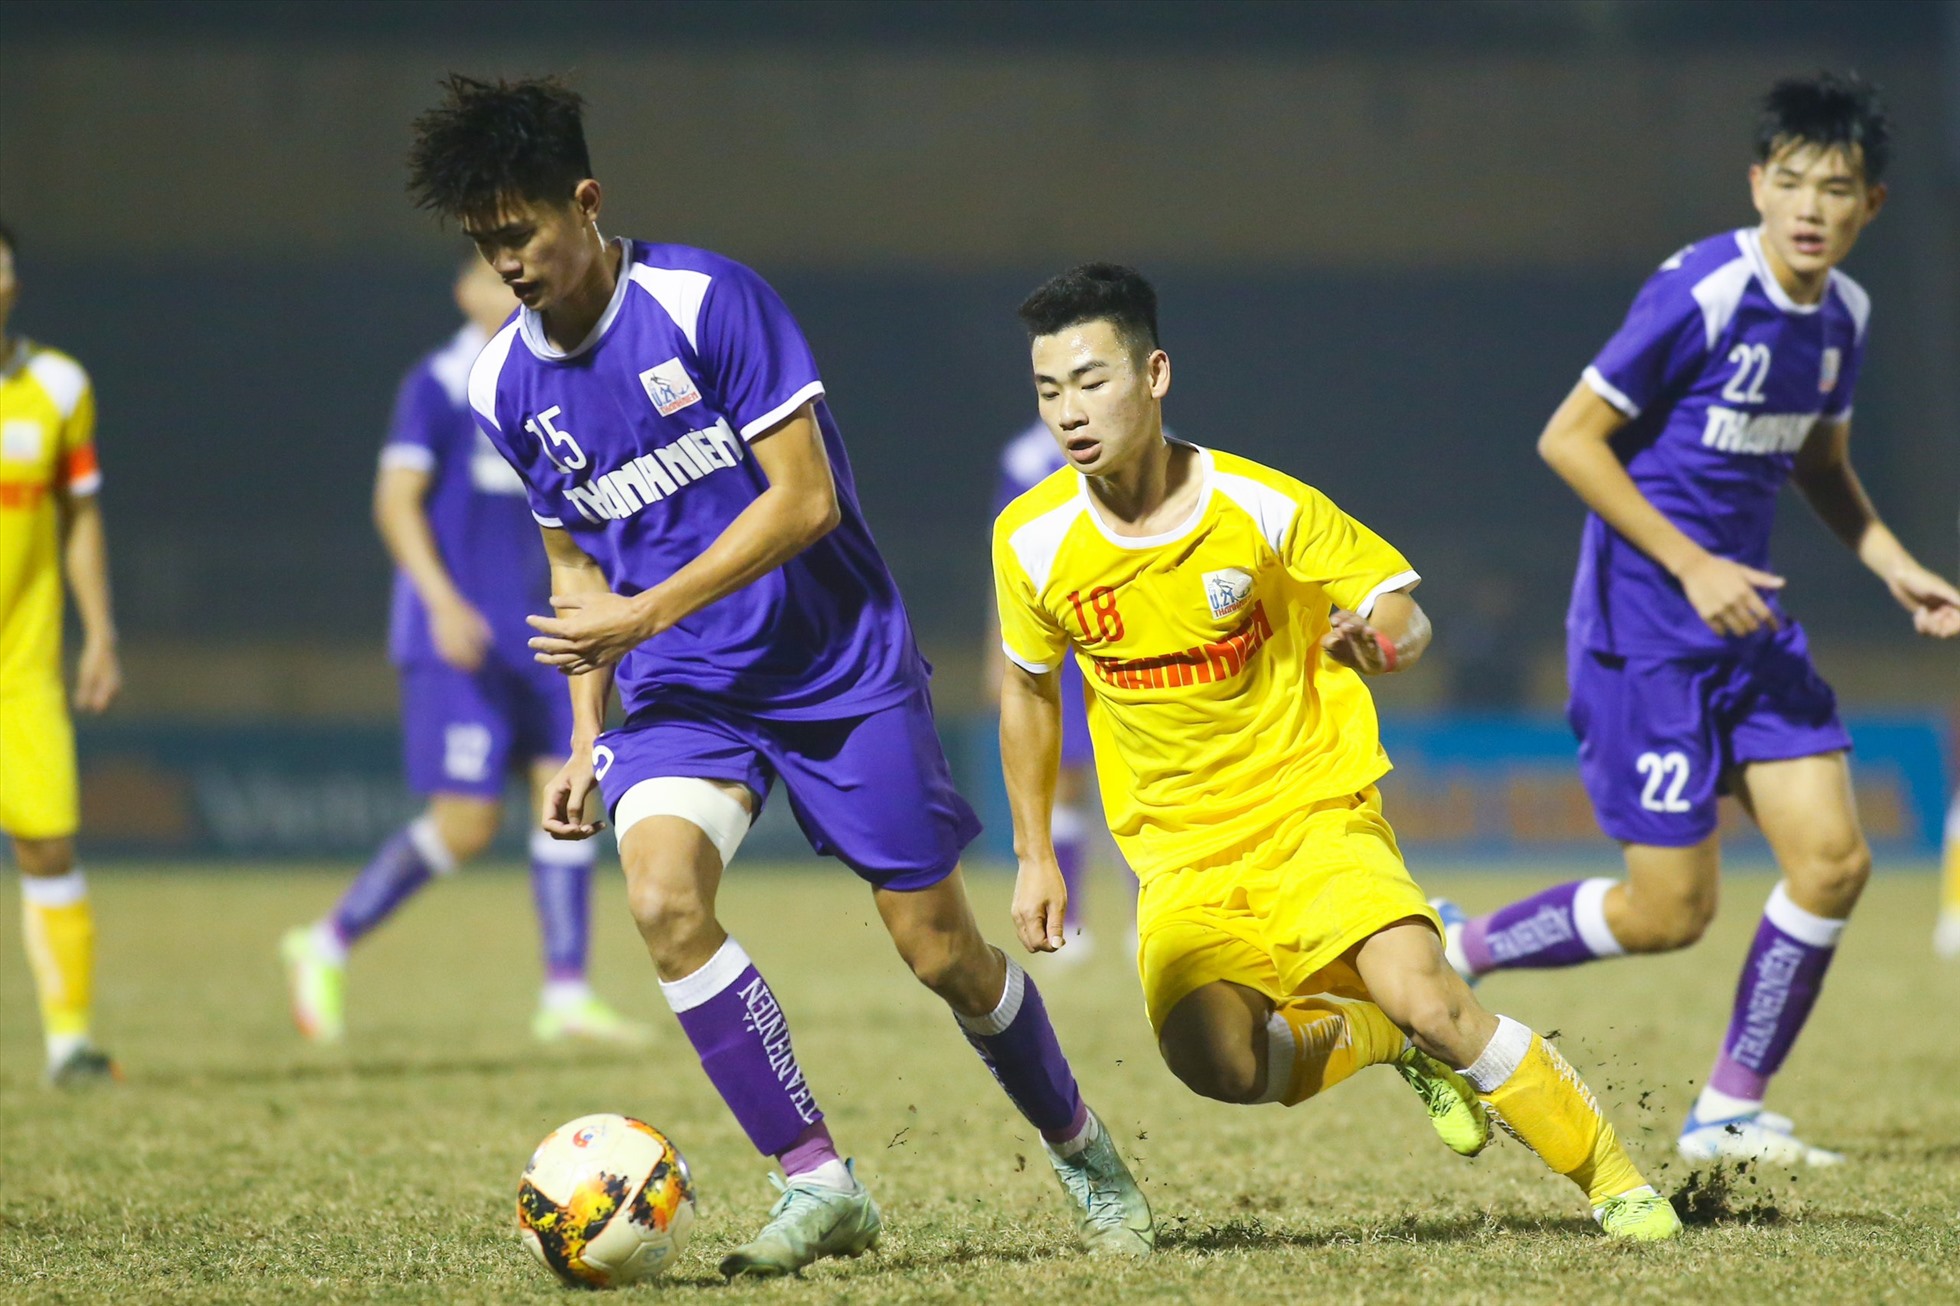 Sau khi có bàn thắng dẫn trước, đội bóng áo vàng chơi dồn ép đối phương nhưng không thể ghi thêm bàn thắng. Chung cuộc, U21 Hà Nội thắng U21 Bình Dương 1-0 và giành ngôi vô địch giải U21 Quốc gia 2022.